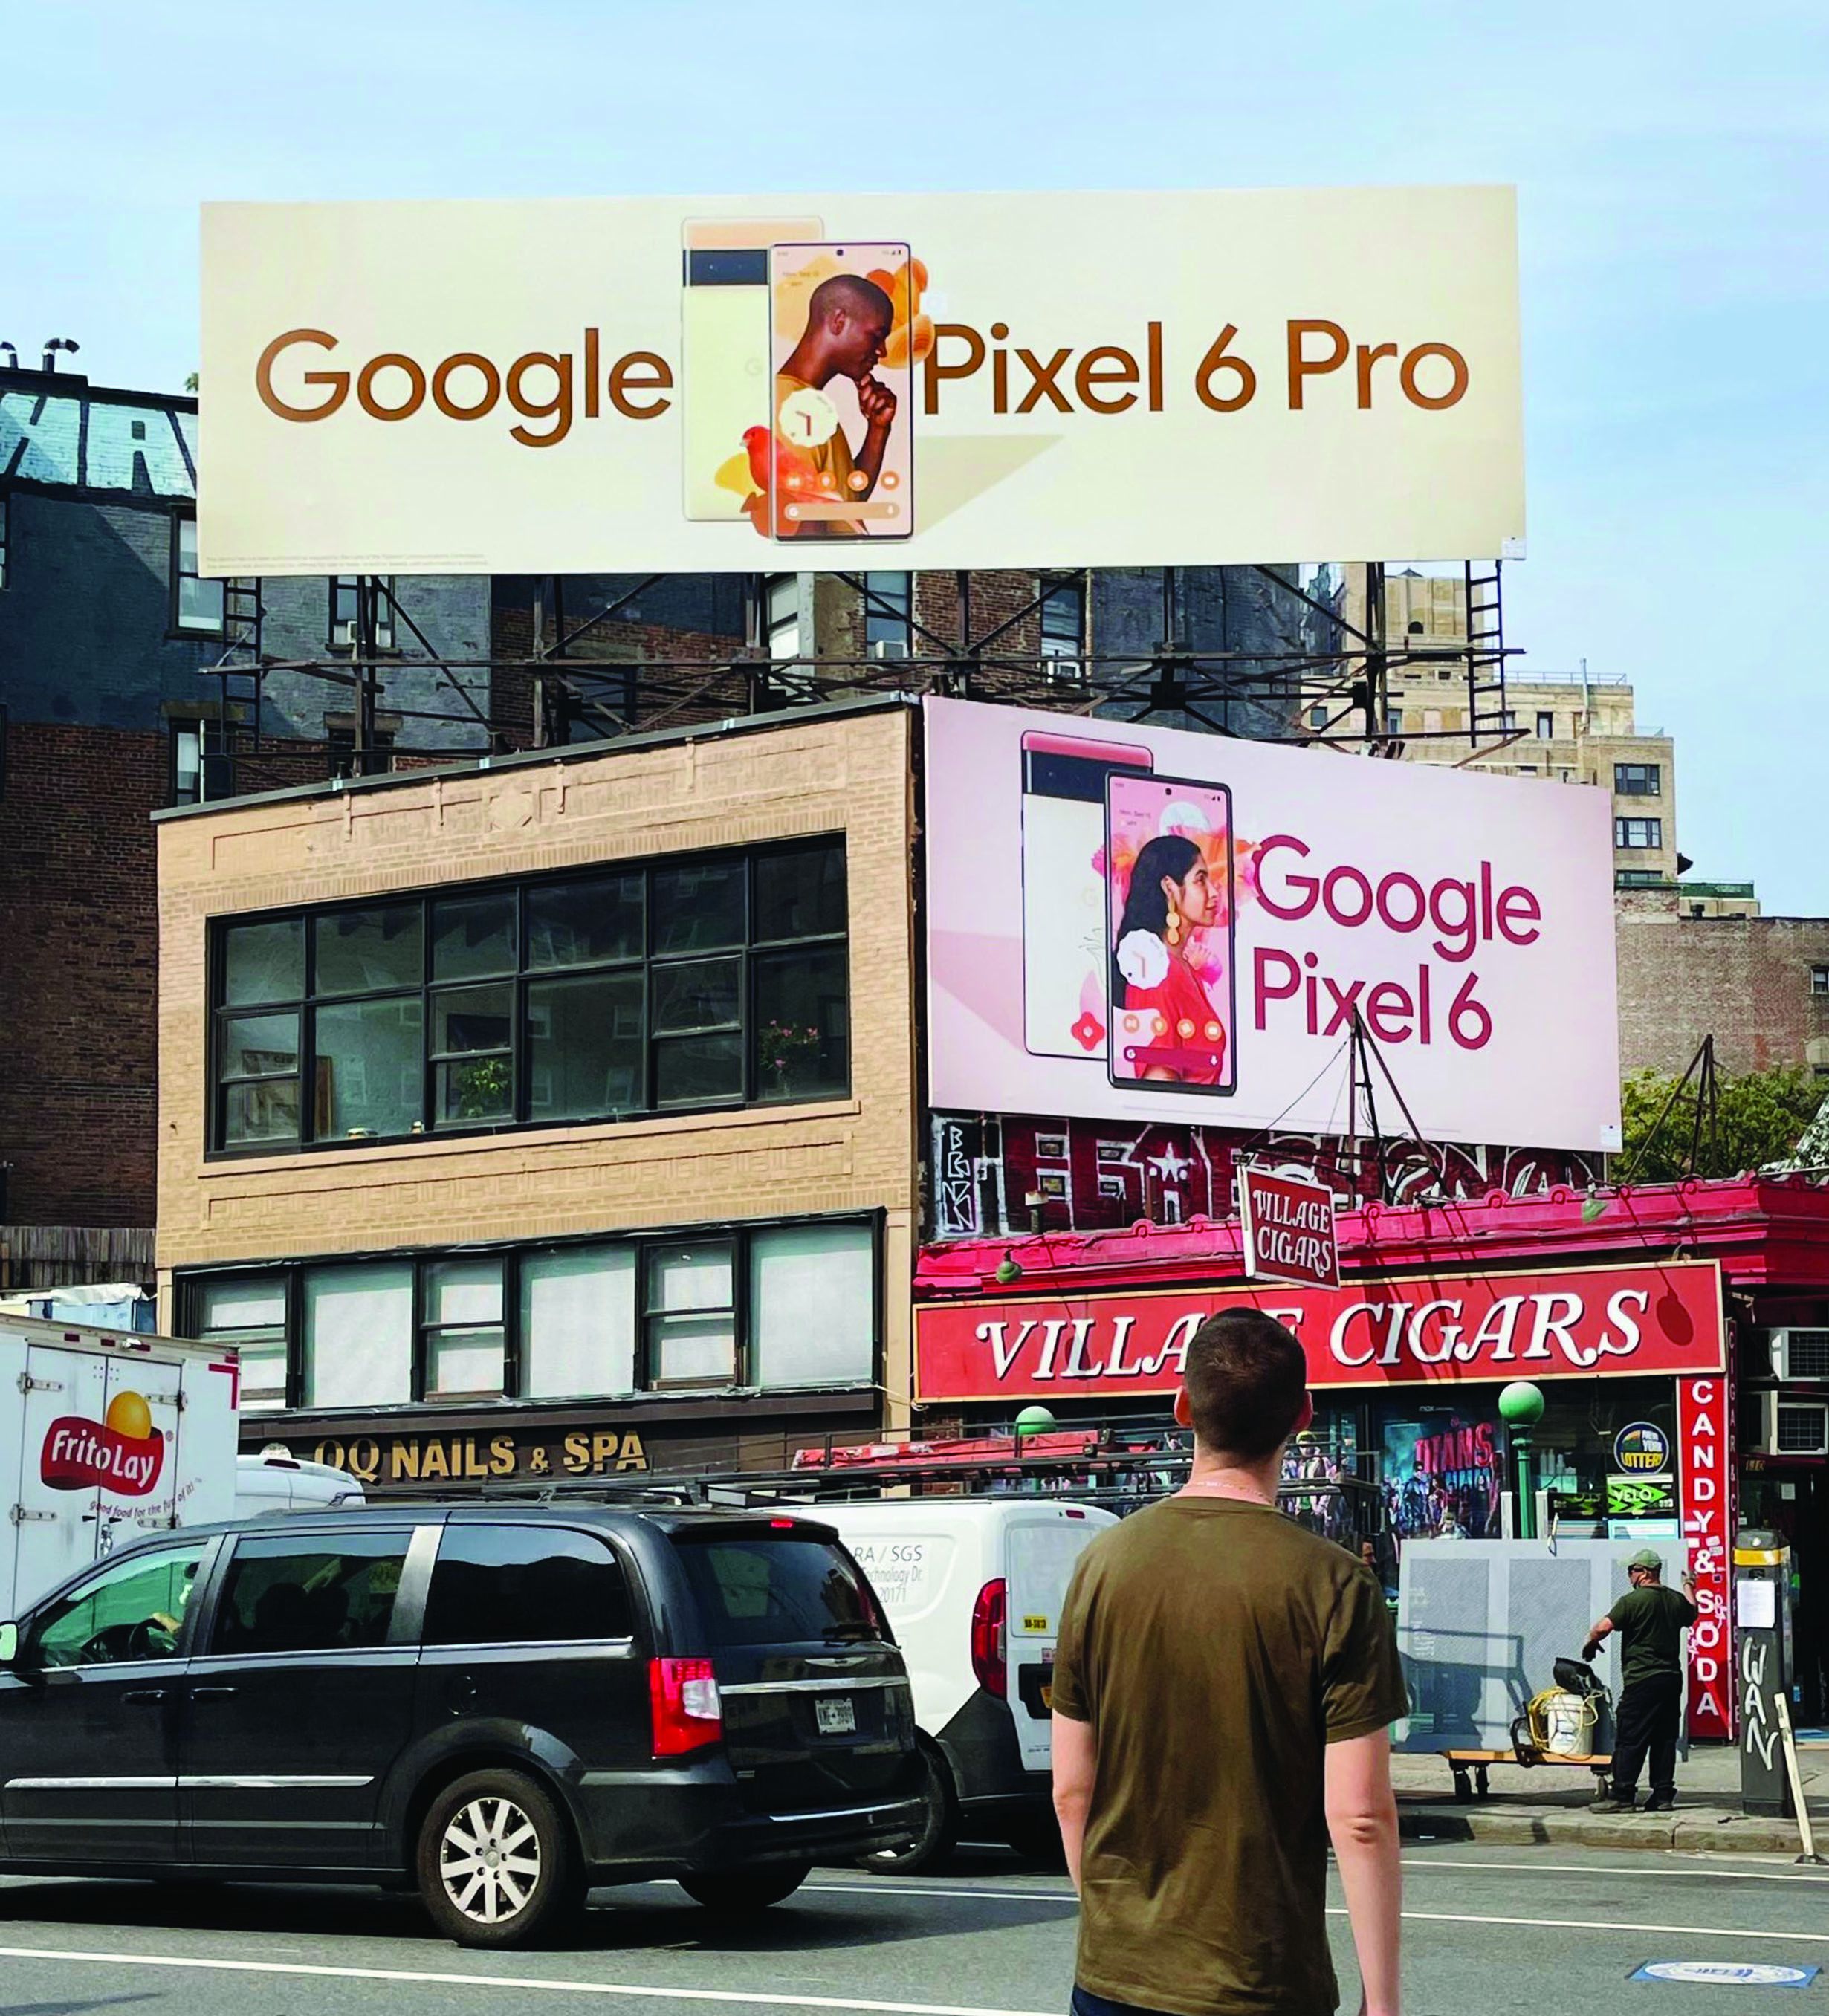 Tuy vẫn chưa có số liệu chính xác về doanh số Pixel 6 sau chiến dịch Google Chips, nhưng thành công của chiến dịch này là không thể phủ nhận. 